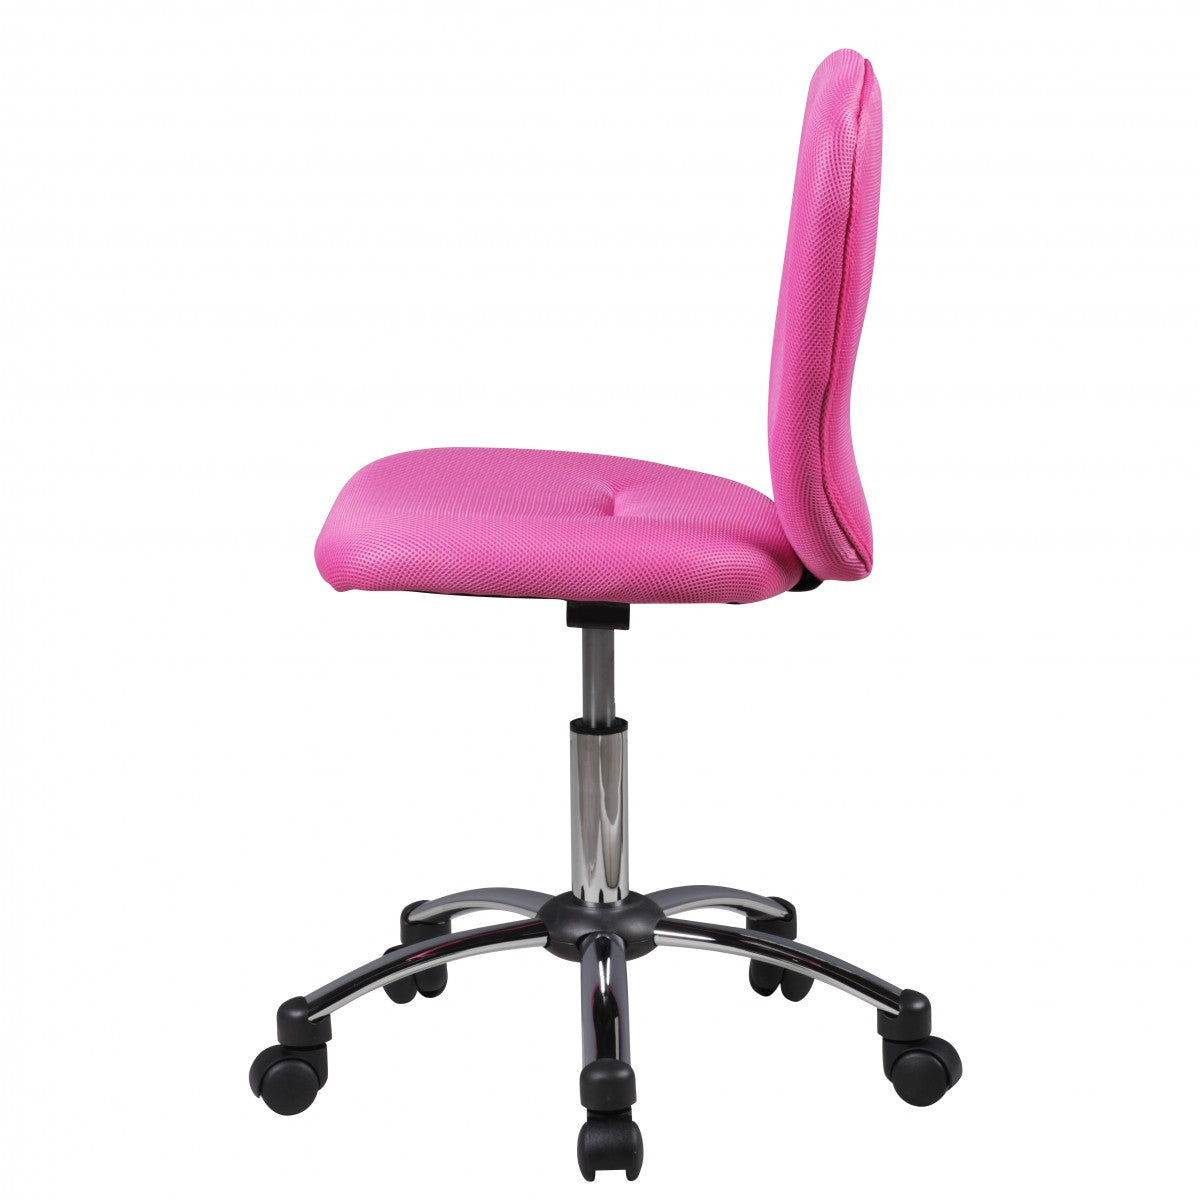 Chaise de bureau Nancy's Topeka pour enfants - Chaise pivotante - Chaise de bureau - Chaise haute - Réglable - Noir/Vert/Bleu/Rose